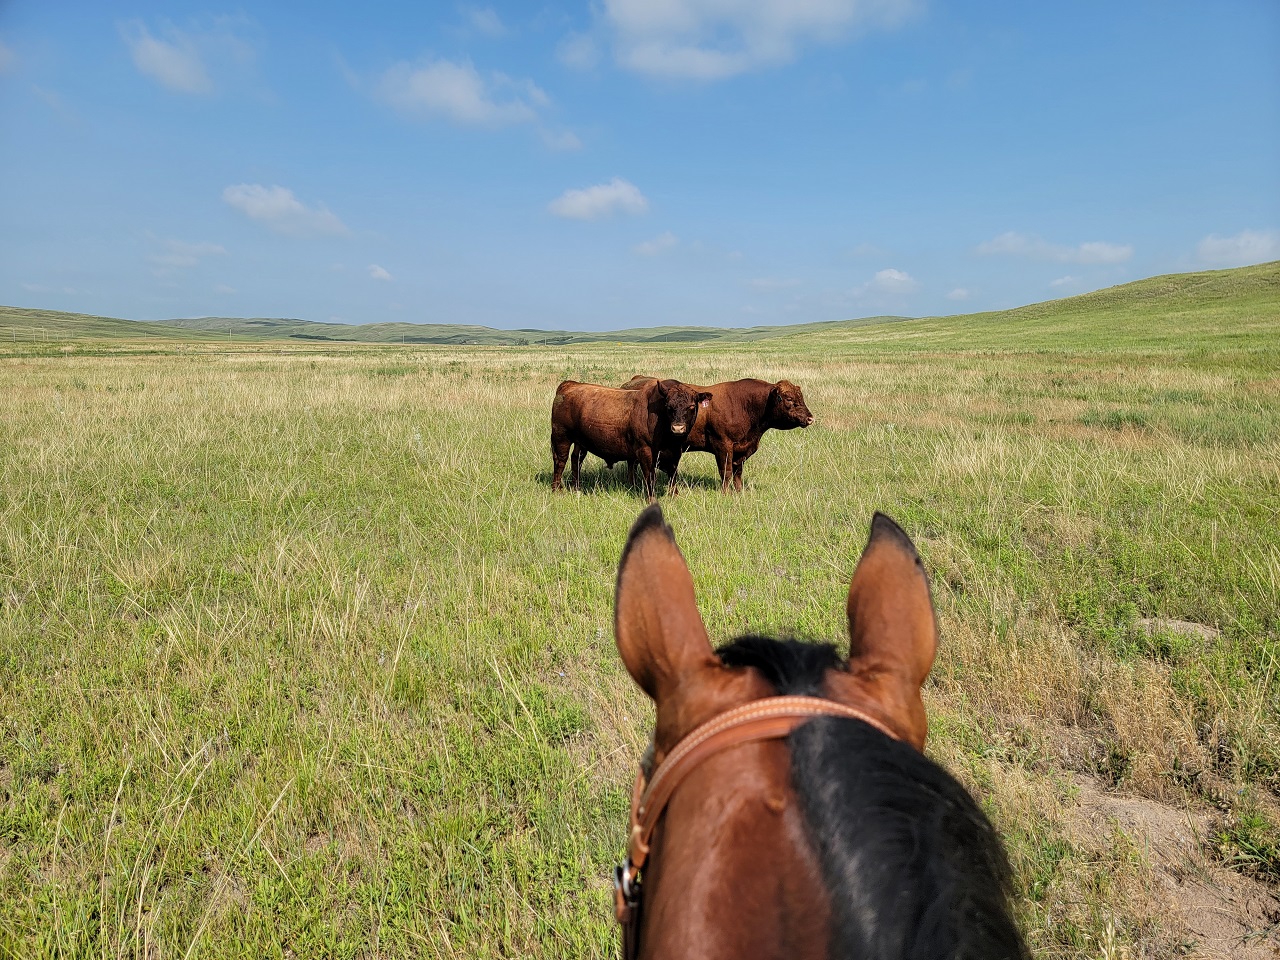 Bulls in pasture